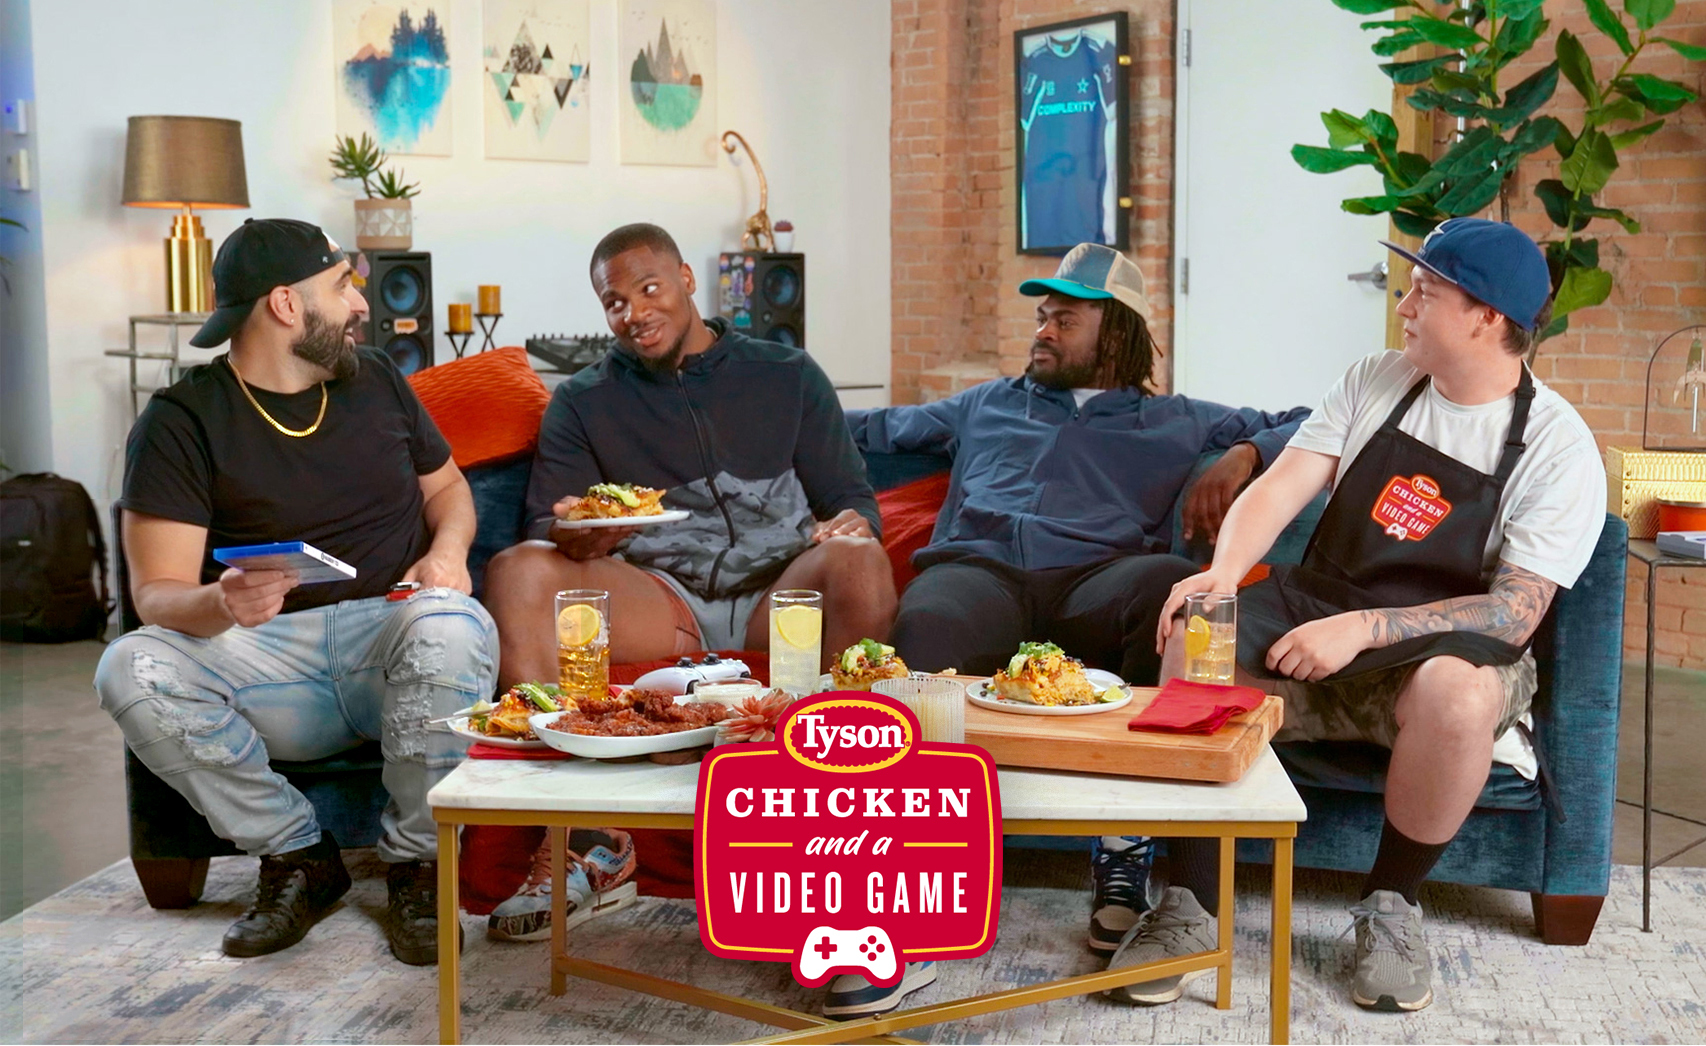 Questa è una foto di uomini seduti attorno a un tavolino da caffè con il pollo servito.